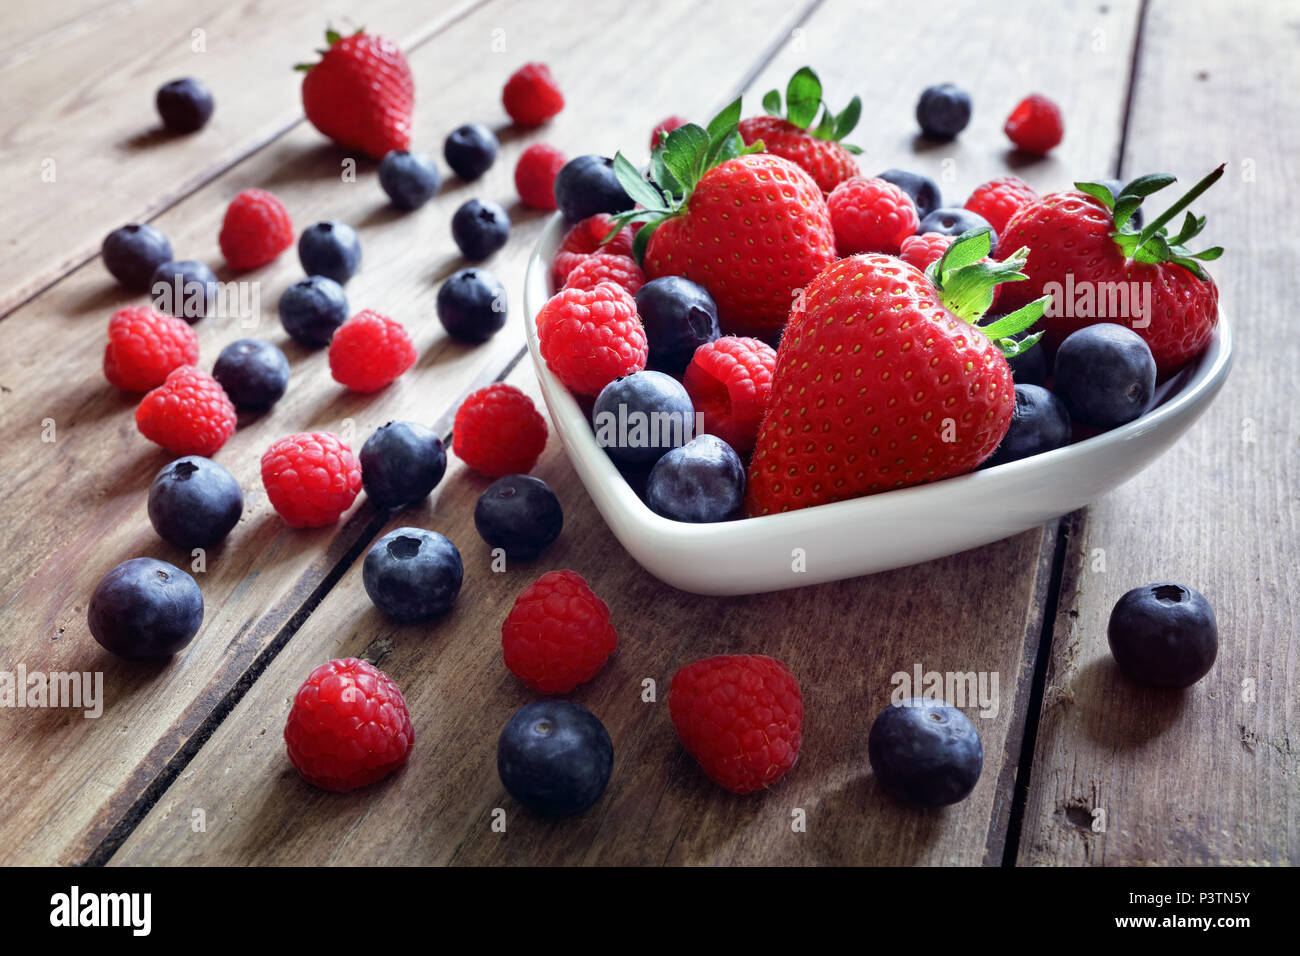 Erdbeere, Heidelbeere und Himbeere Obst in einer Schüssel auf Holz Tisch Antioxidans organische Superfood Konzept für gesundes Essen und Ernährung Stockfoto